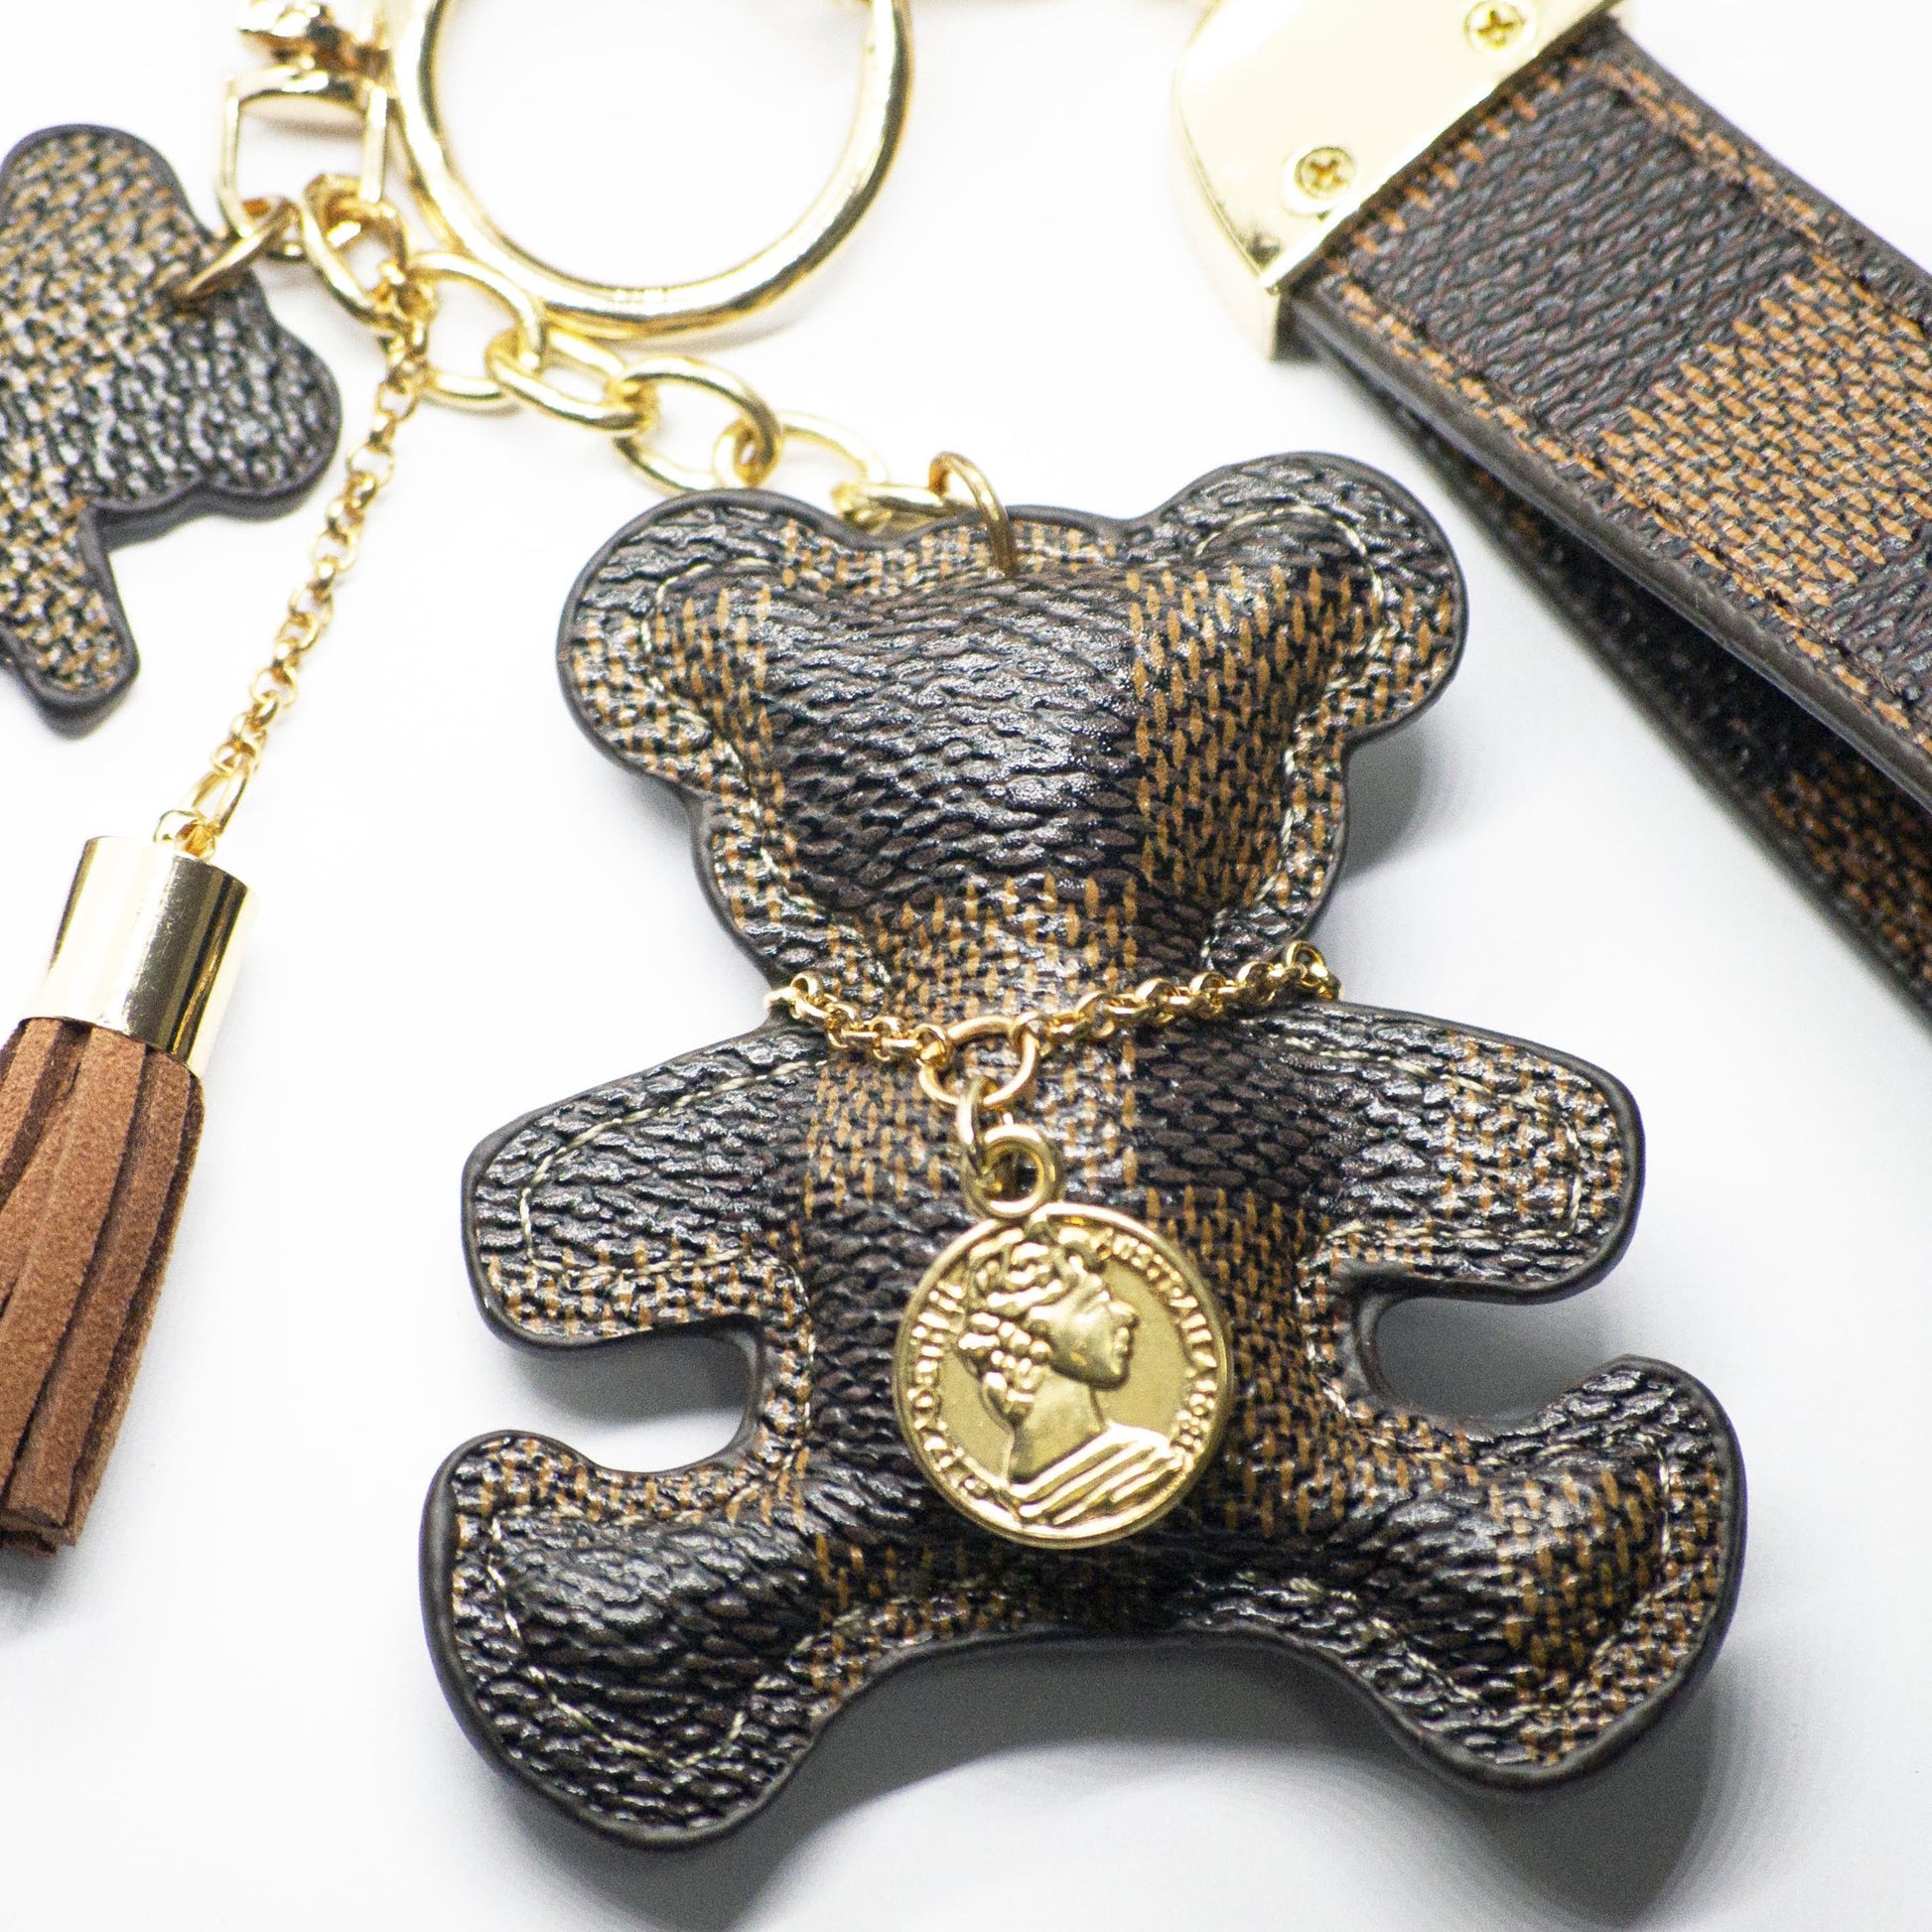 Louis Vuitton Teddy Bear Key Chain 